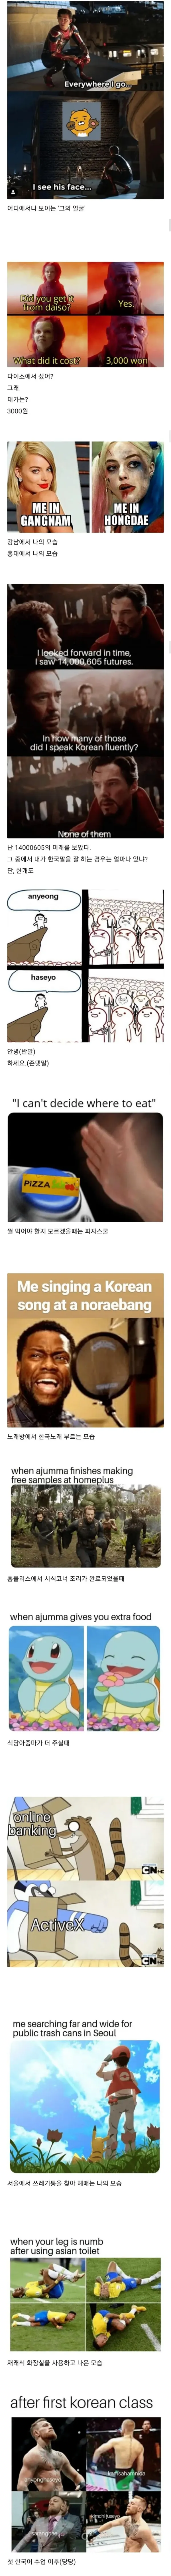 외국인의 한국생활 공감